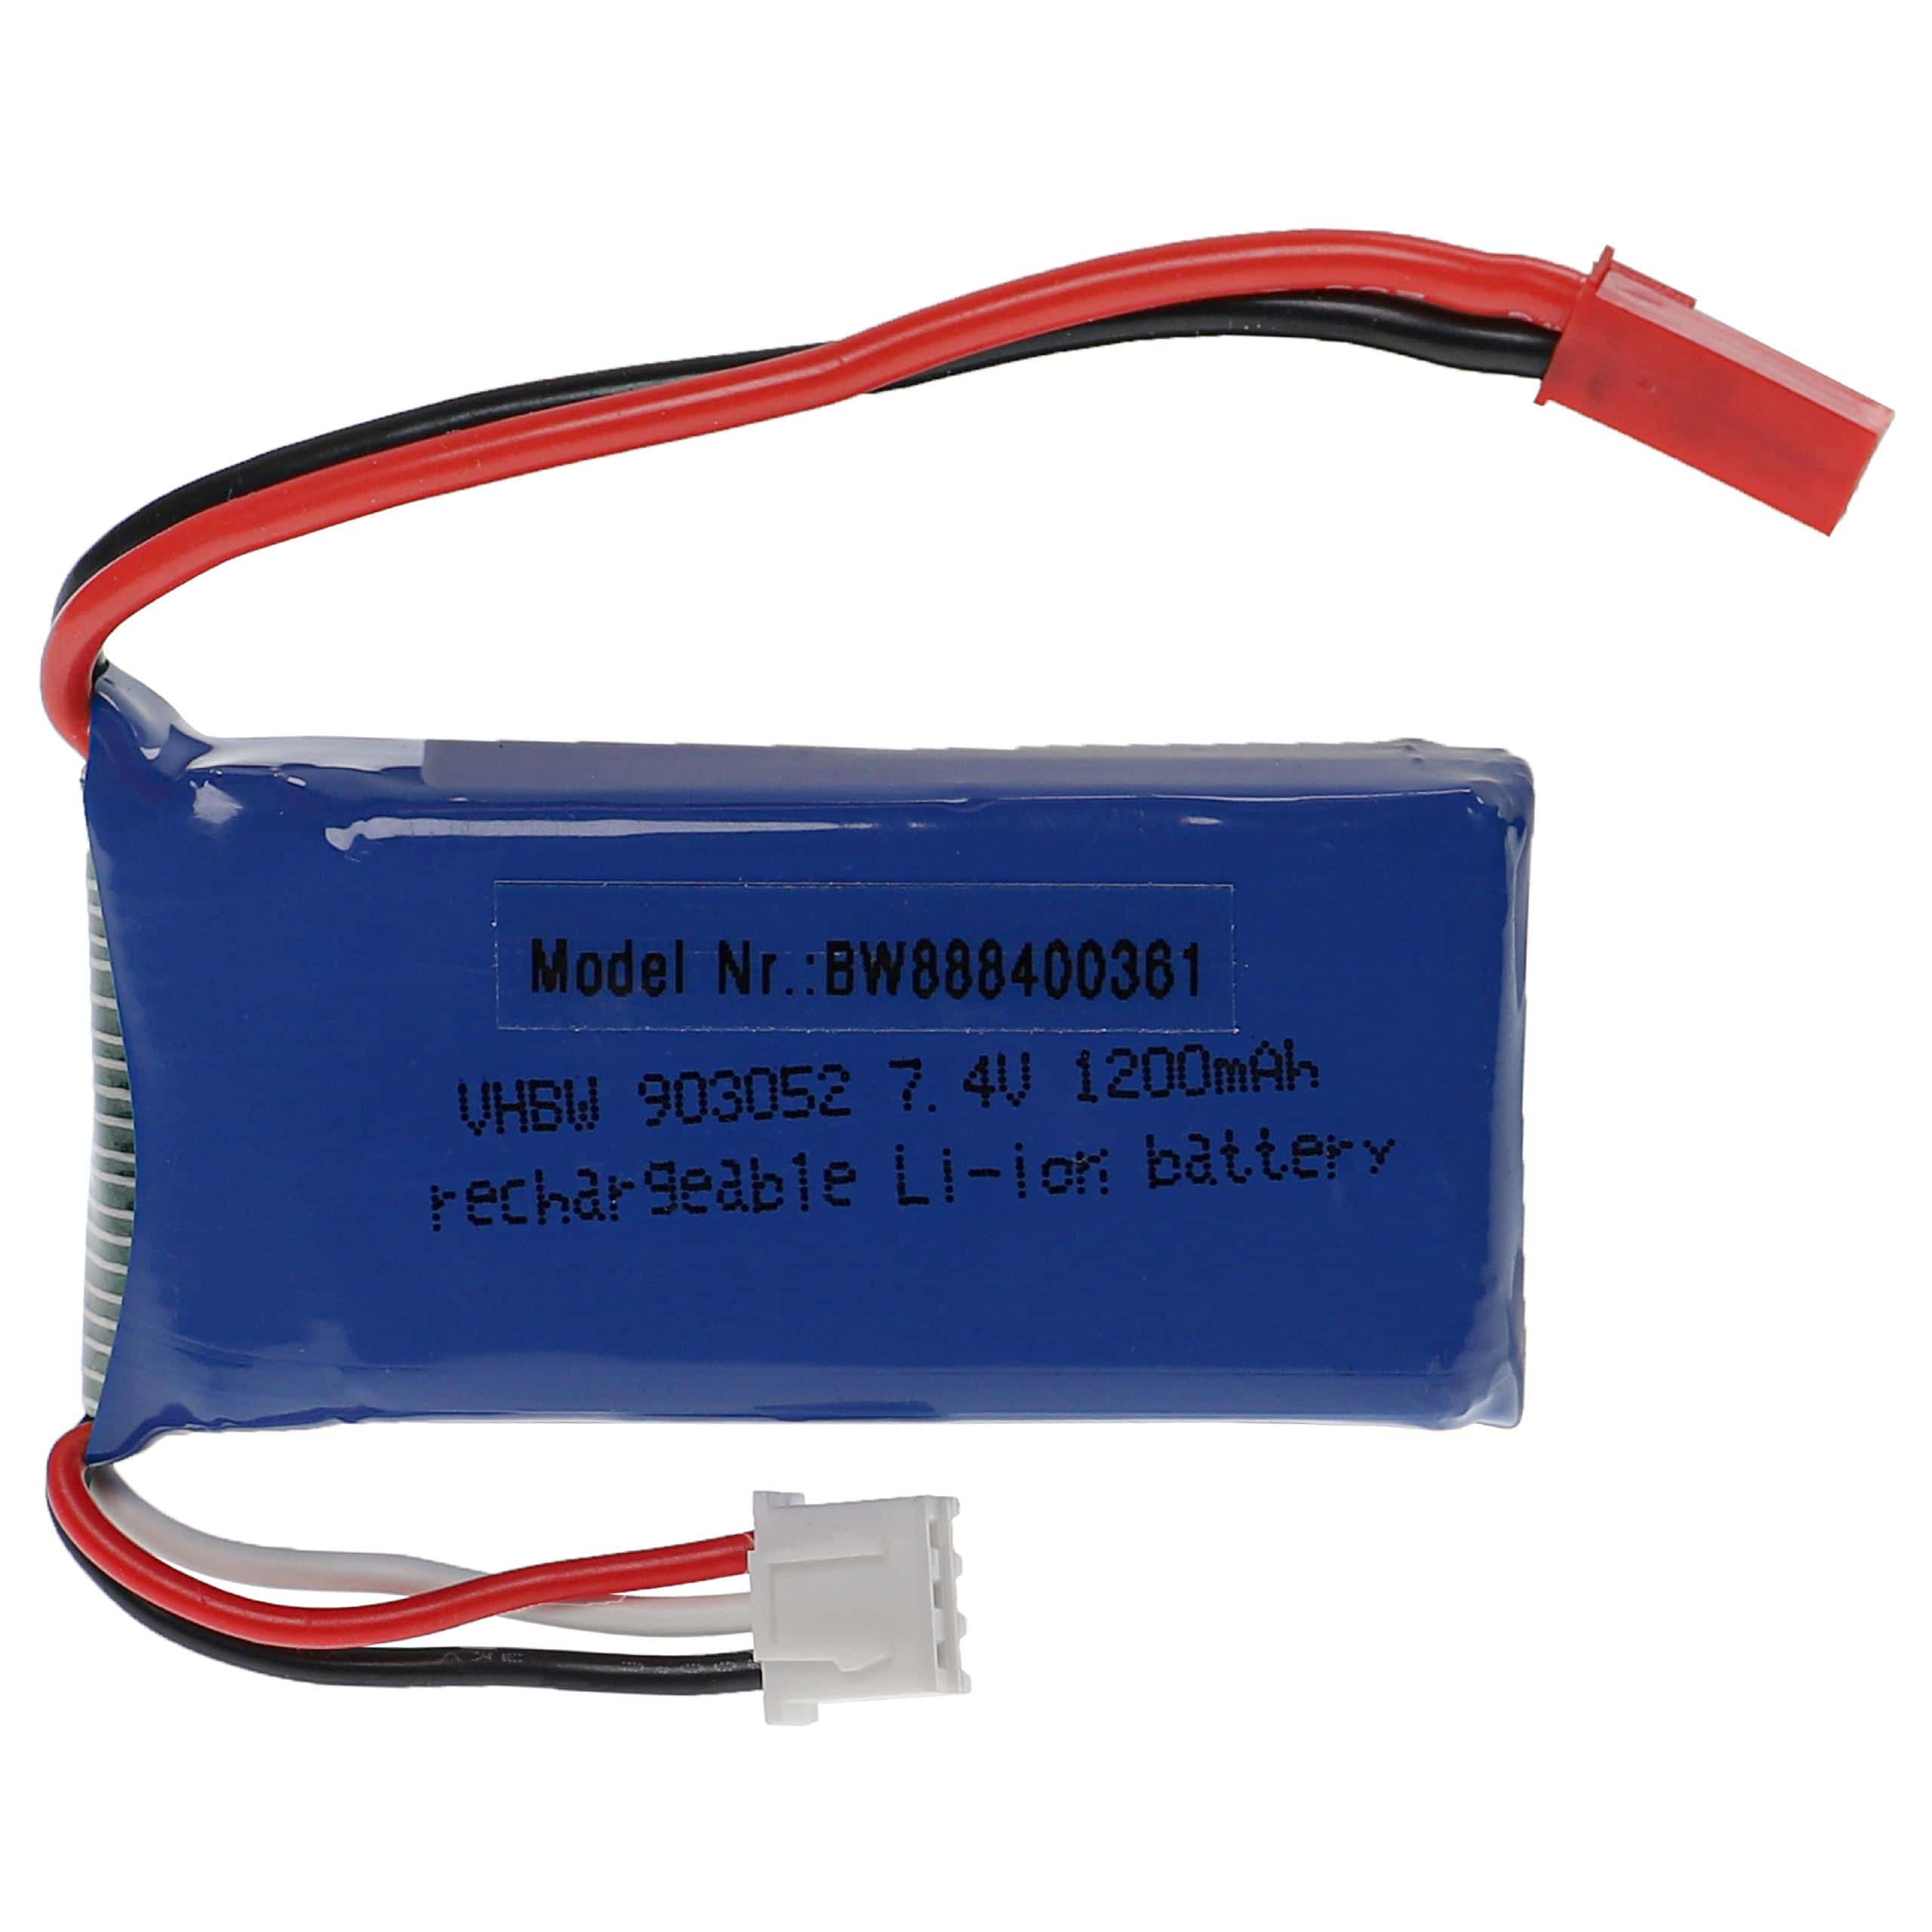 Batterie pour modèle radio-télécommandé - 1200mAh 7,4V Li-polymère, BEC